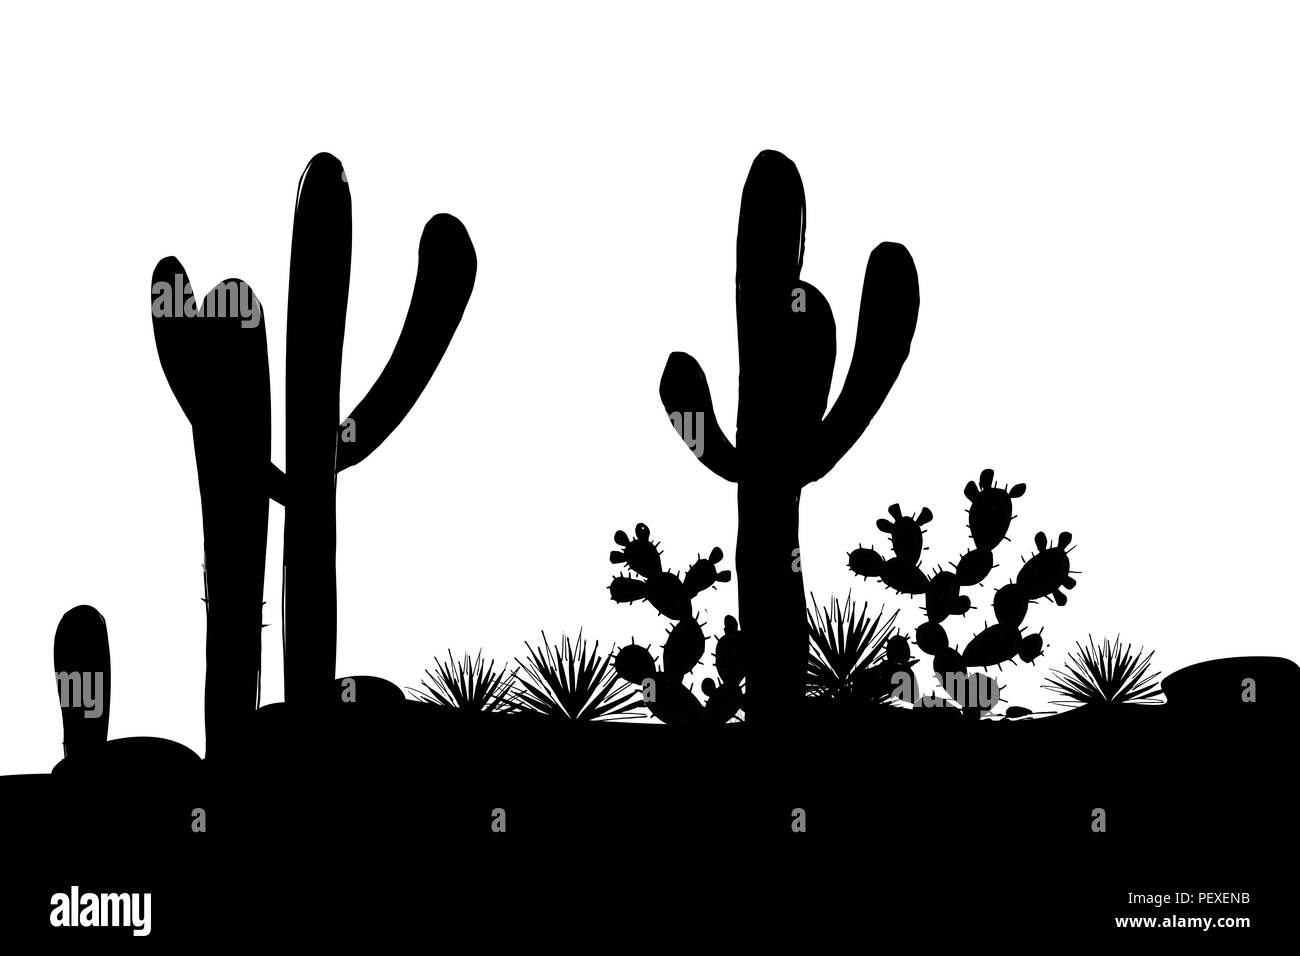 Paisaje mexicano con saguaro, nopal, agaves y piedras. Ilustración vectorial. banner elegante en blanco y negro Ilustración del Vector